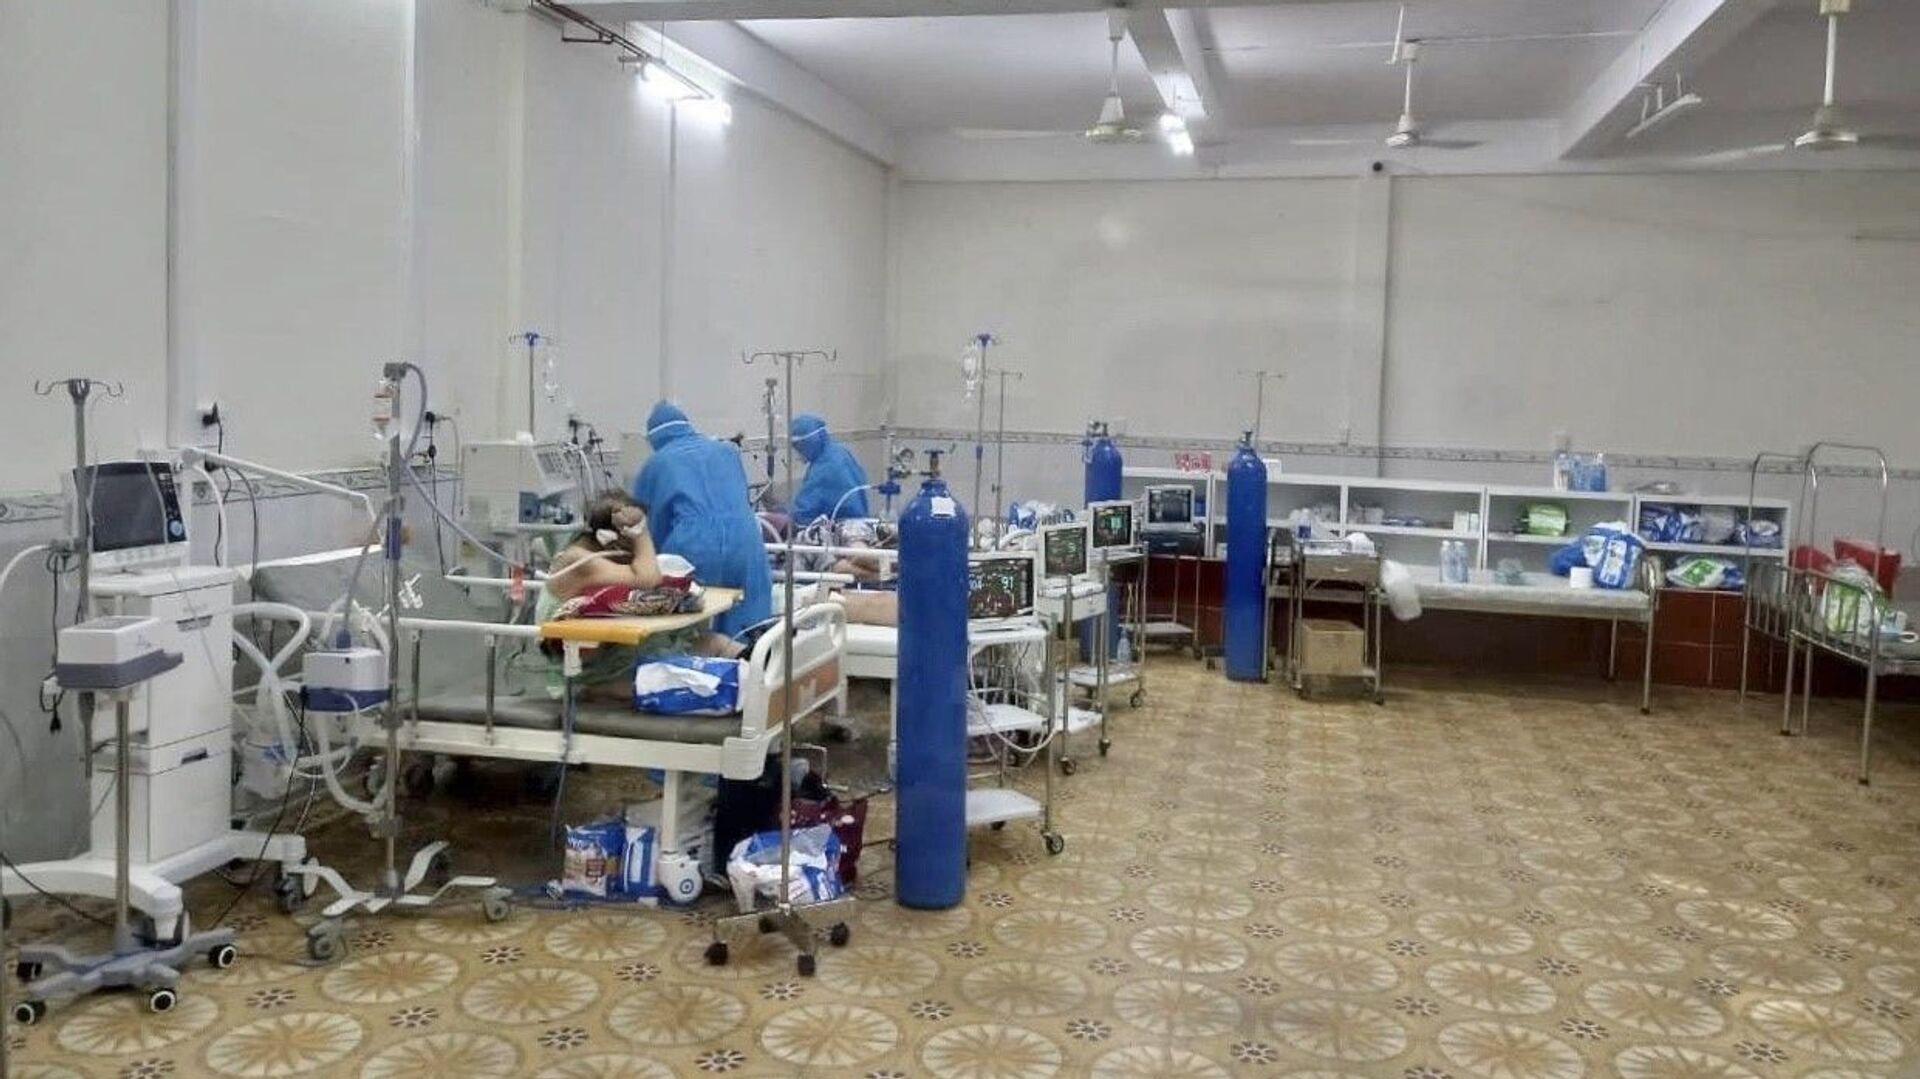 Tại bệnh viện Tân Phú, số lượng bệnh nhân đang điều trị là 220 người. Trong số đó có 151 bệnh nhân nặng cần thở oxy, số còn lại là người có triệu chứng, nhiều bệnh nền cần phải điều trị - Sputnik Việt Nam, 1920, 16.11.2021